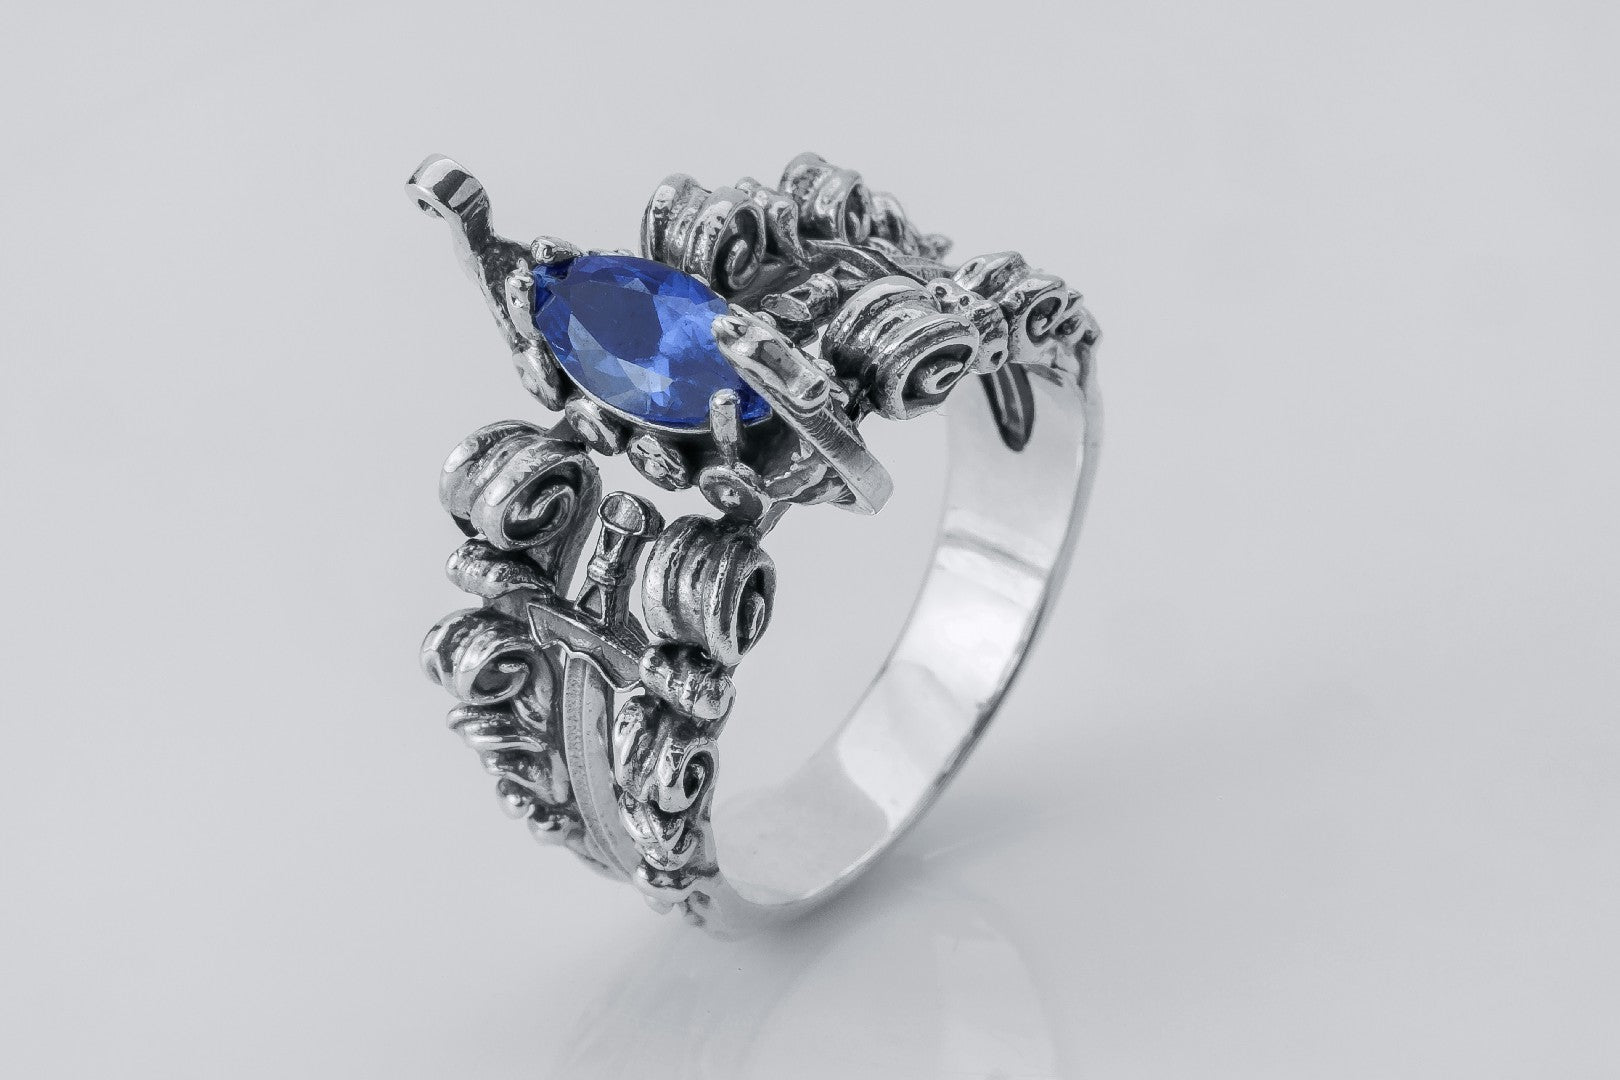 Viking Longship Ring with Blue Gemstone